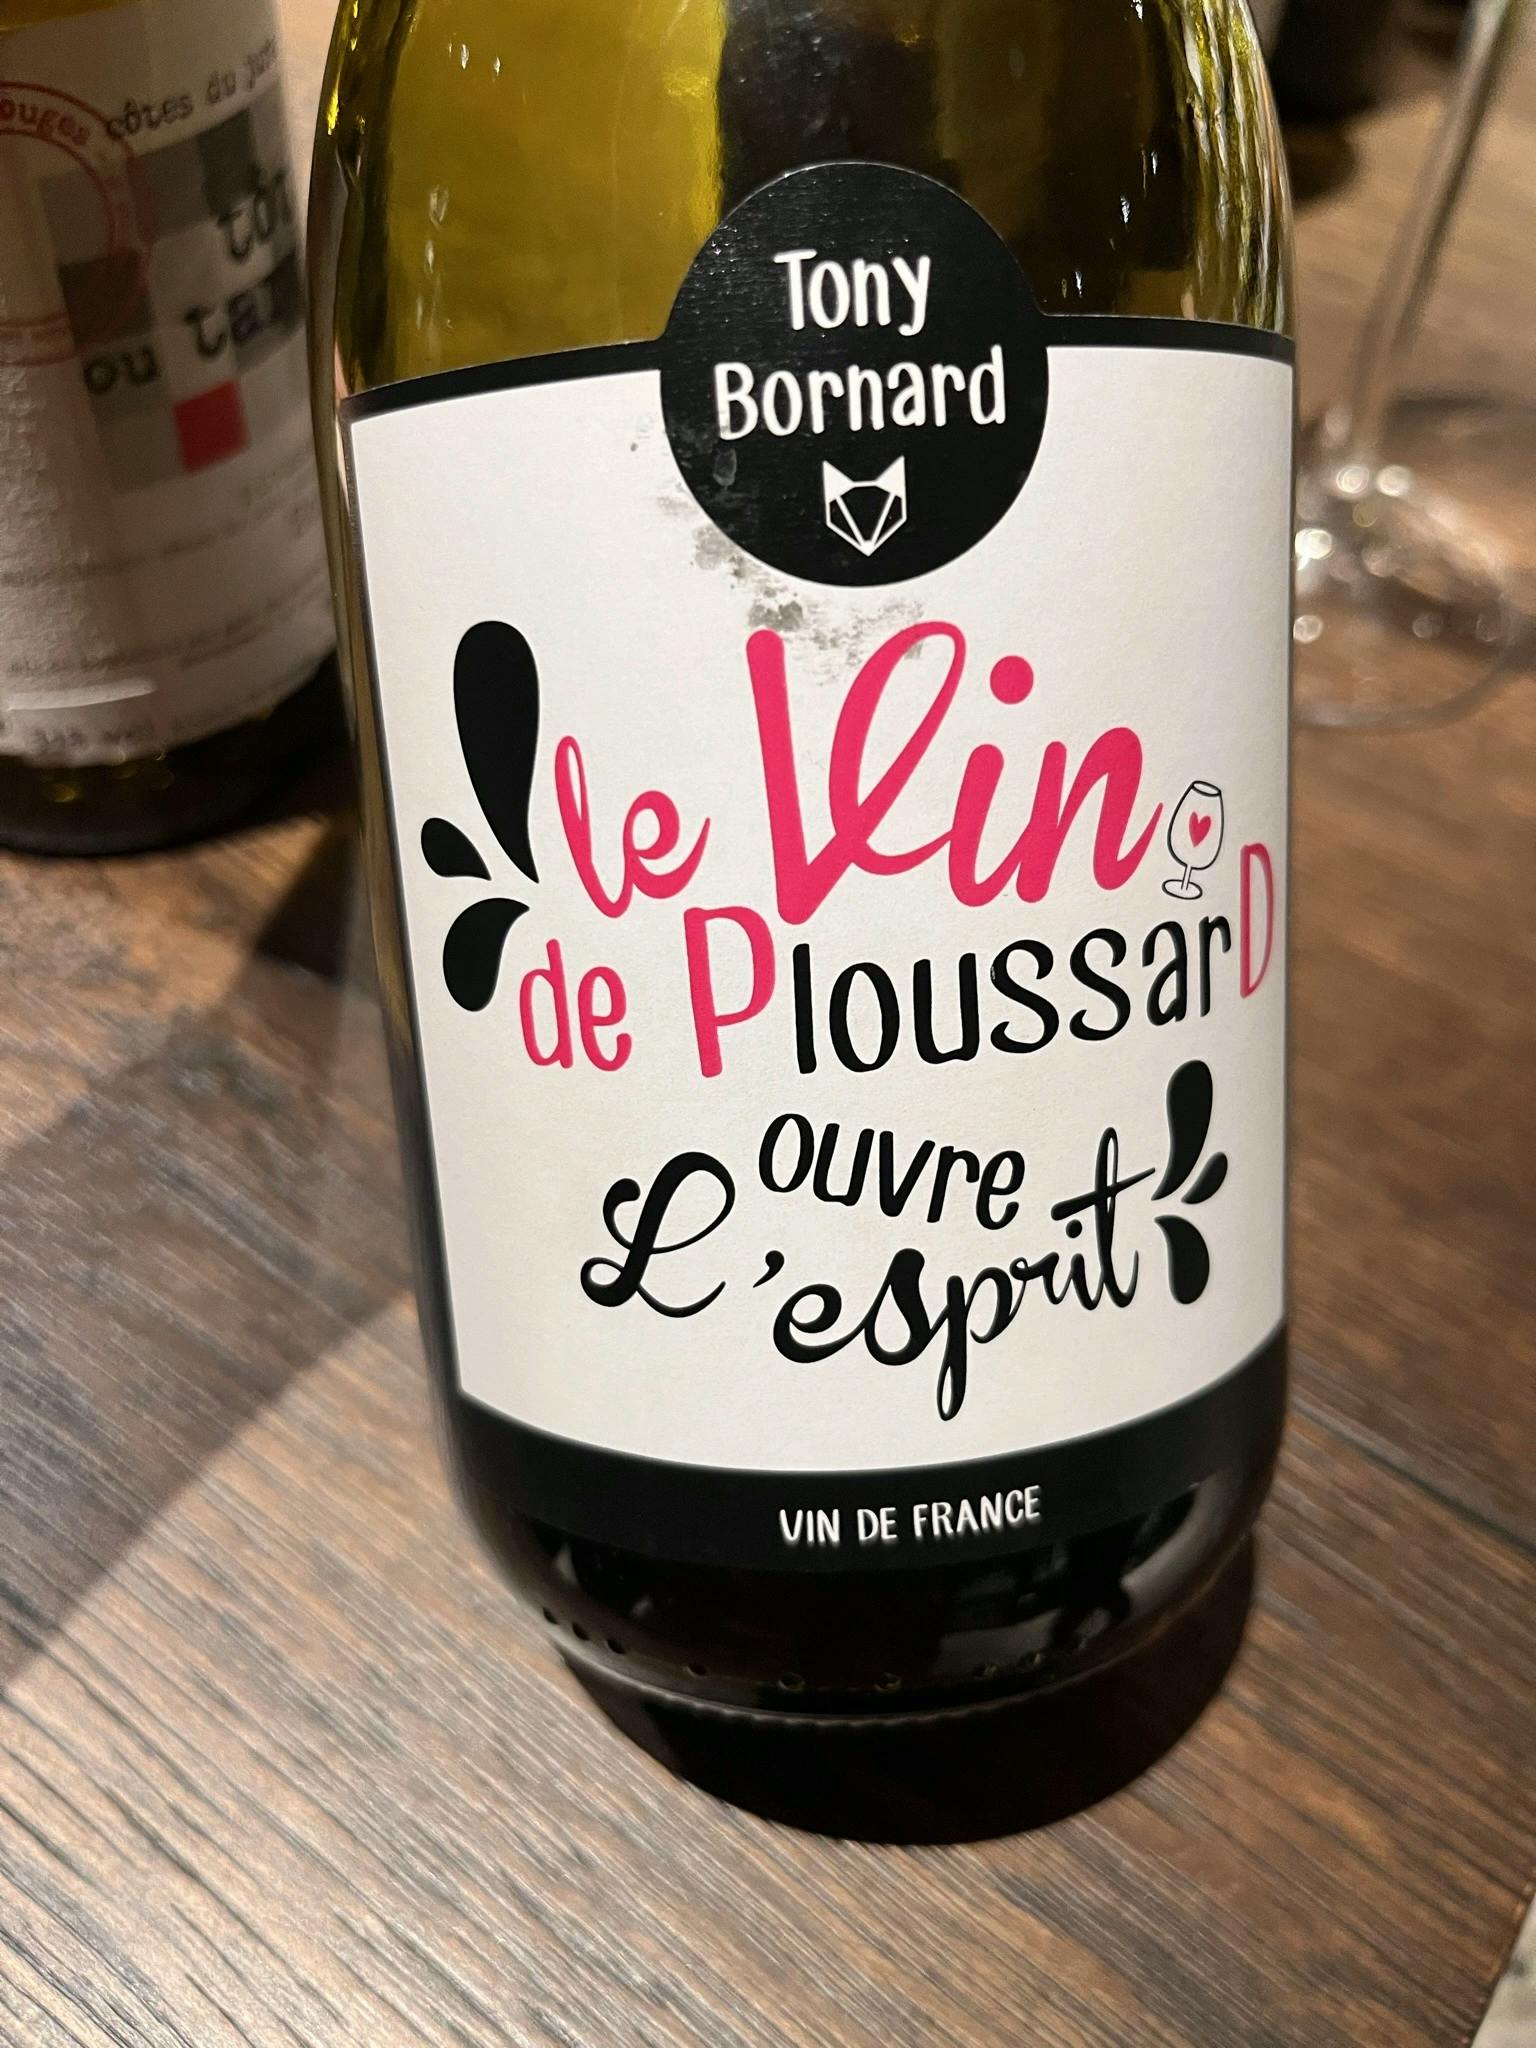 Tony Bornard le Vin de Ploussard ouvre L'esprit 2018